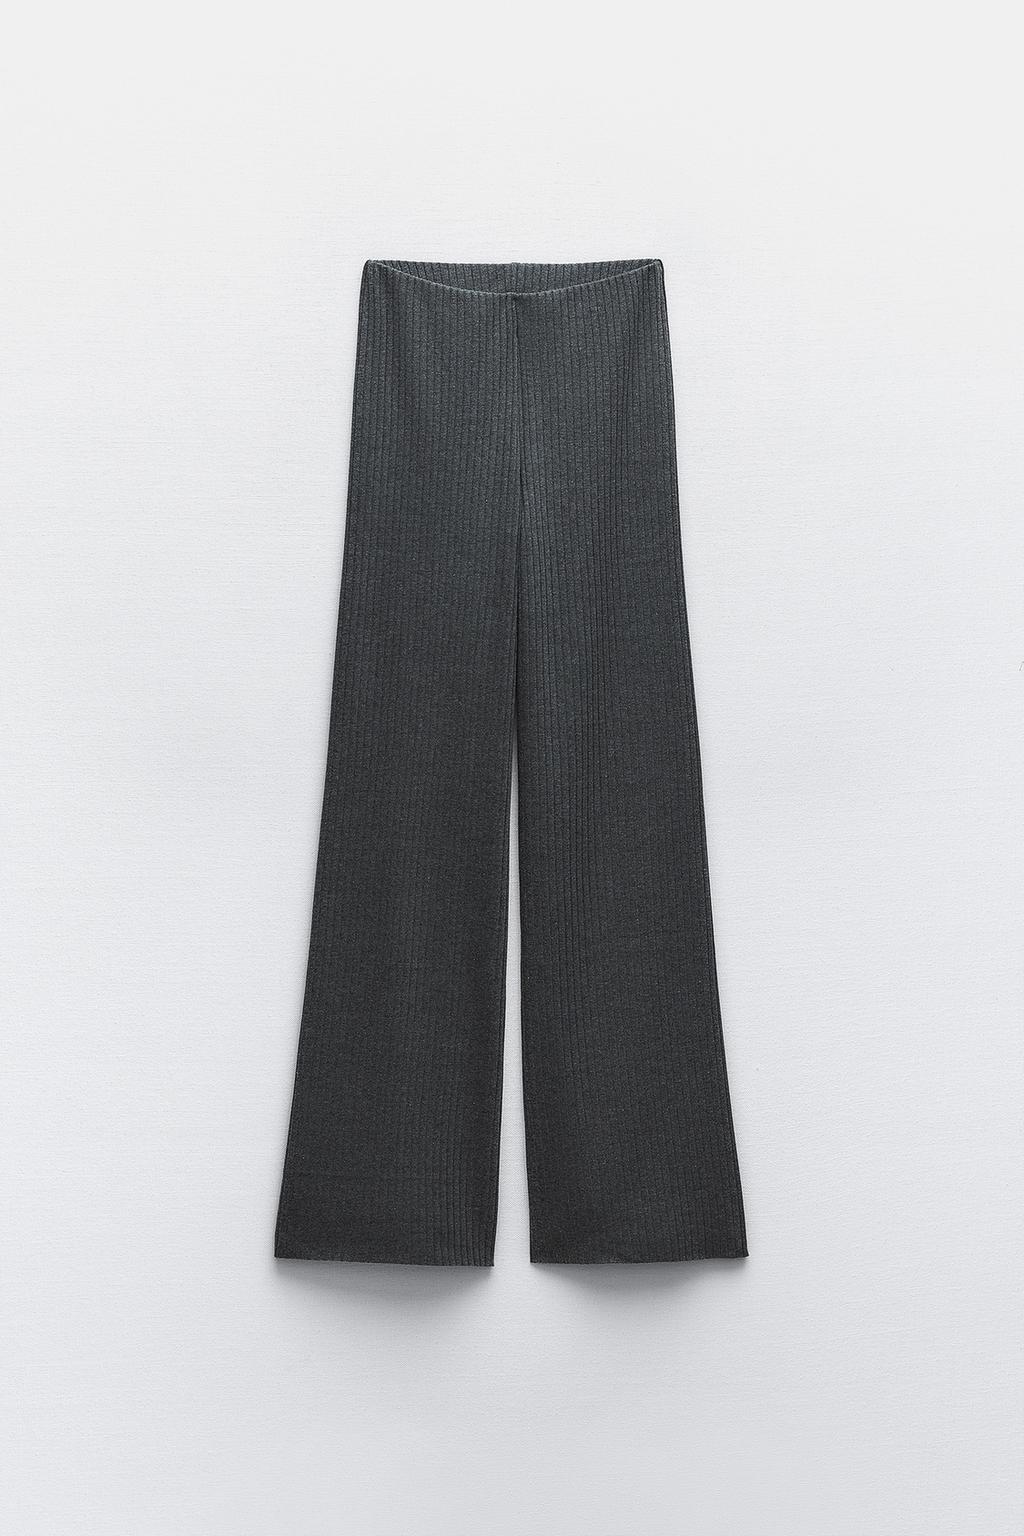 Широкие брюки в ребрику ZARA, серый мергель брюки карандаш женские повседневные до щиколотки однотонные хлопковые штаны с эластичным поясом черные брюки с широкими штанинами в стил